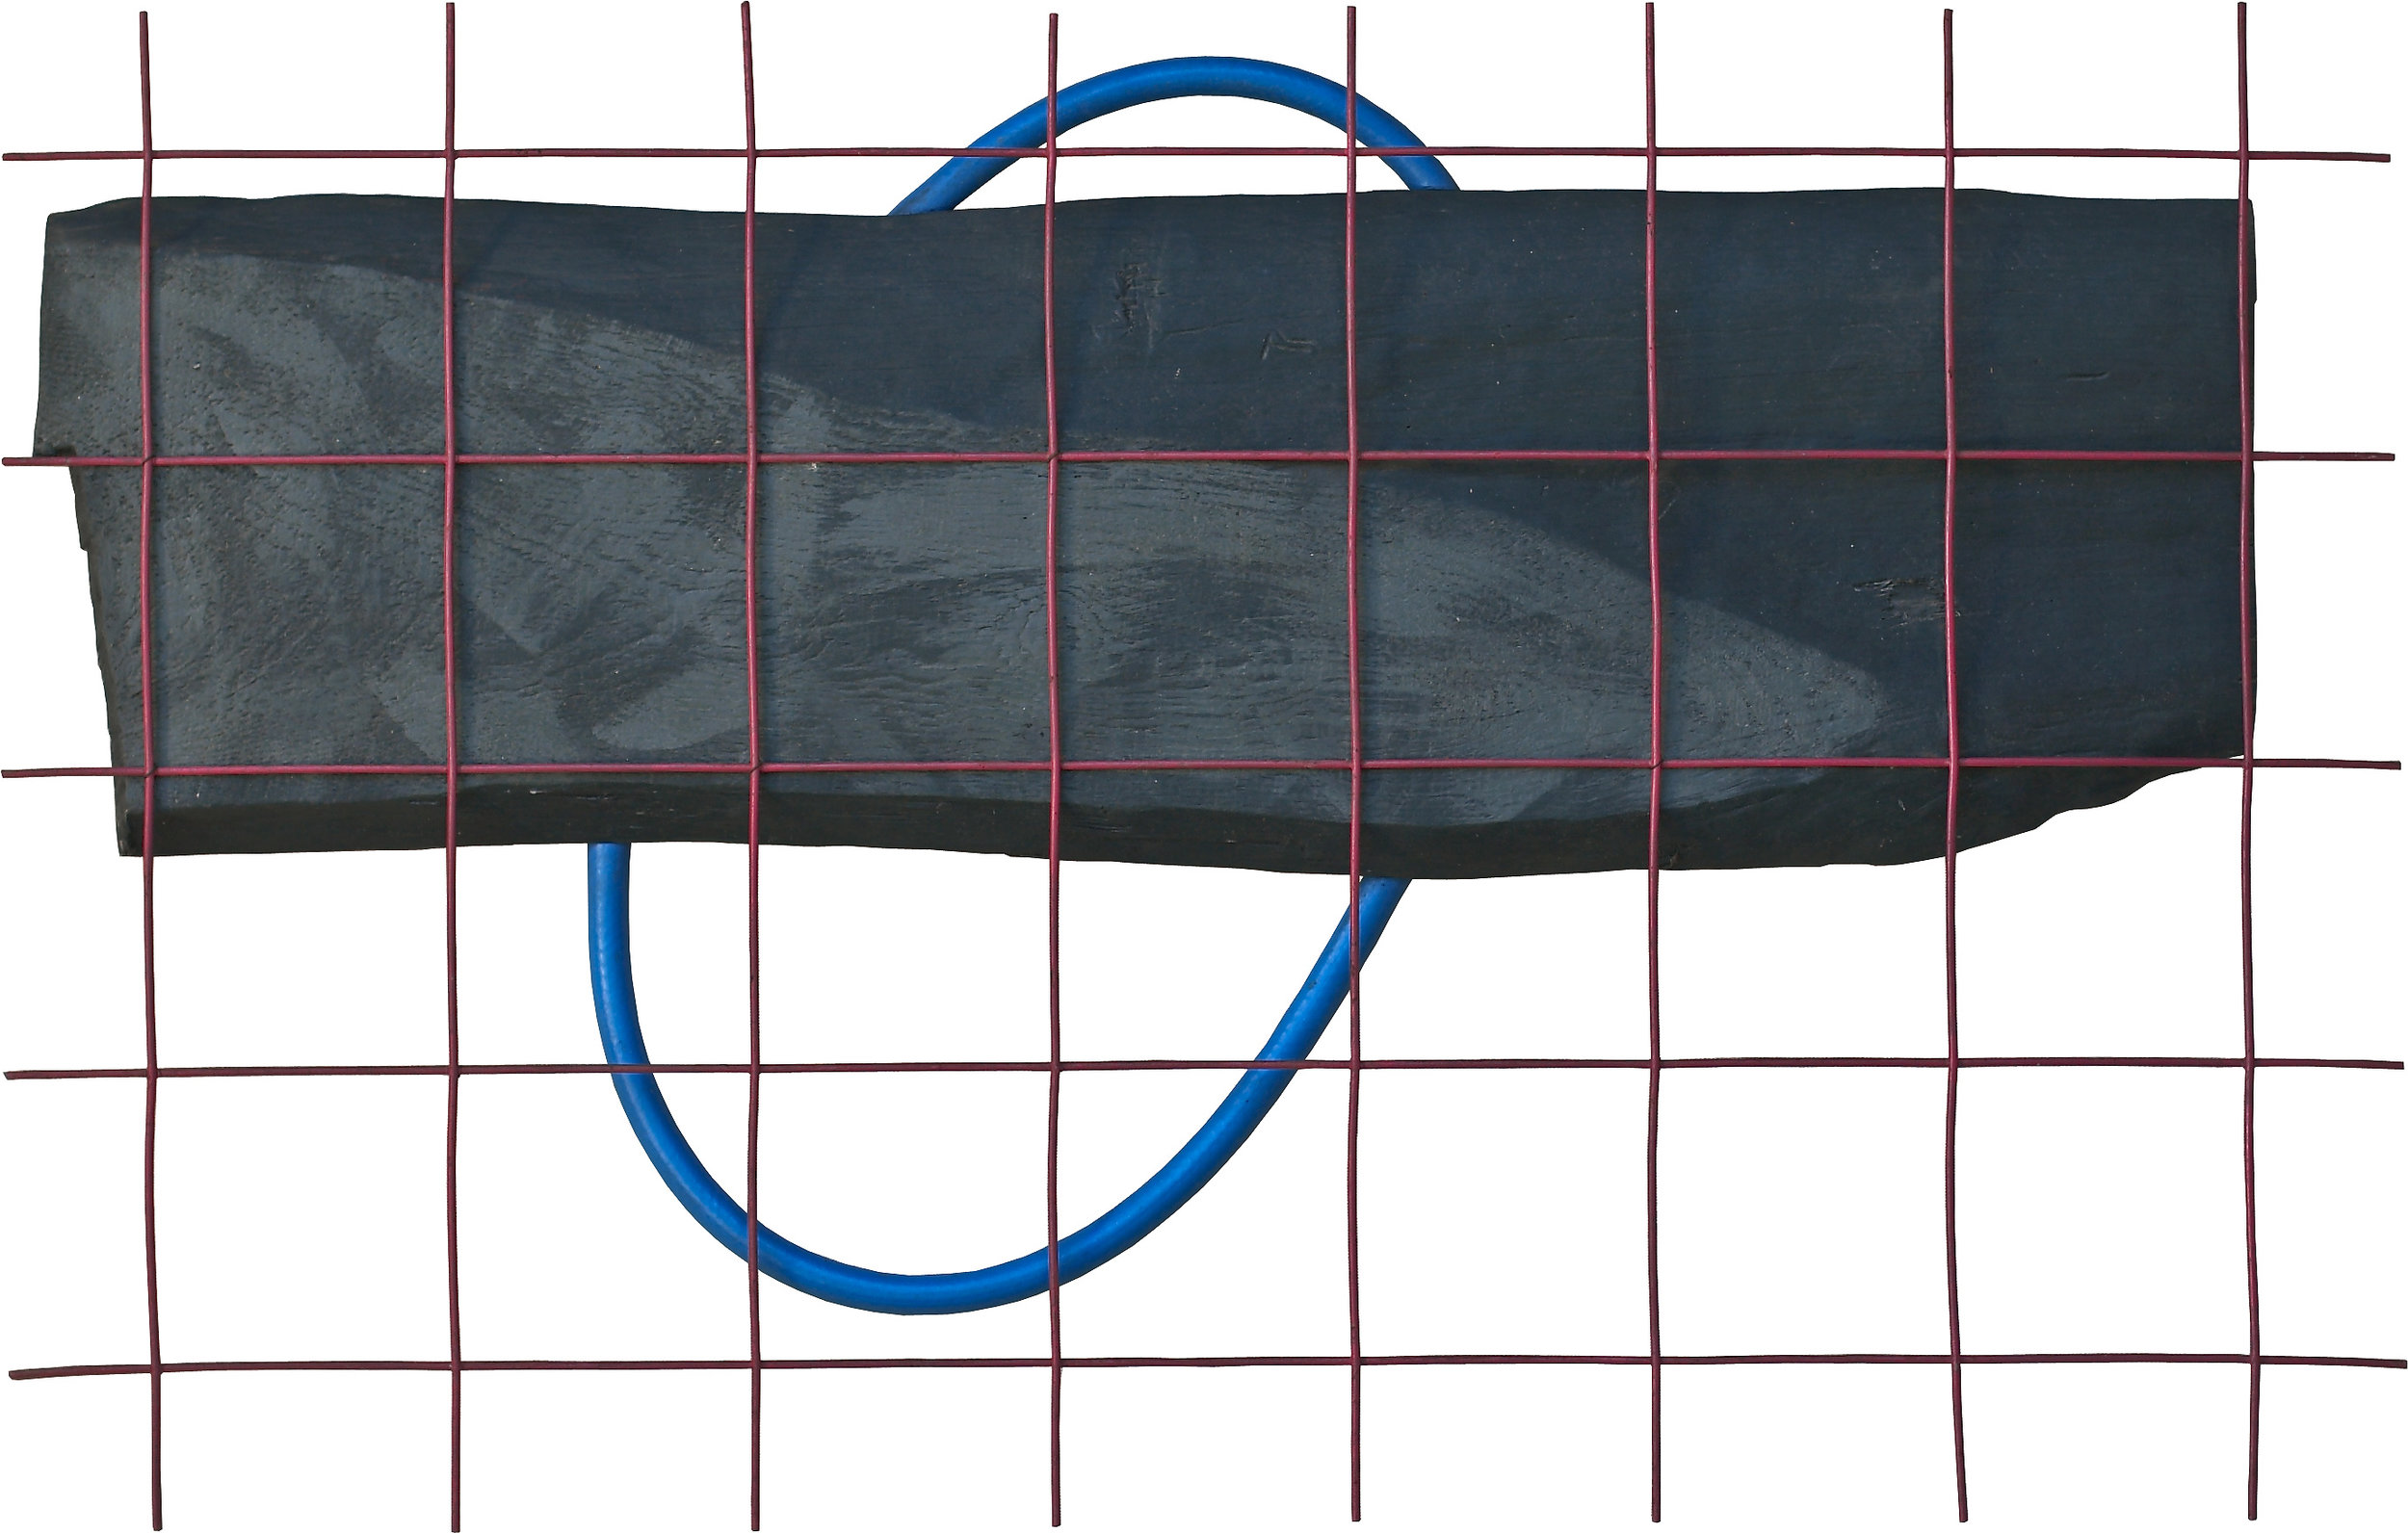 akril, les, železo, PVC, 75 x 118 cm, 1984